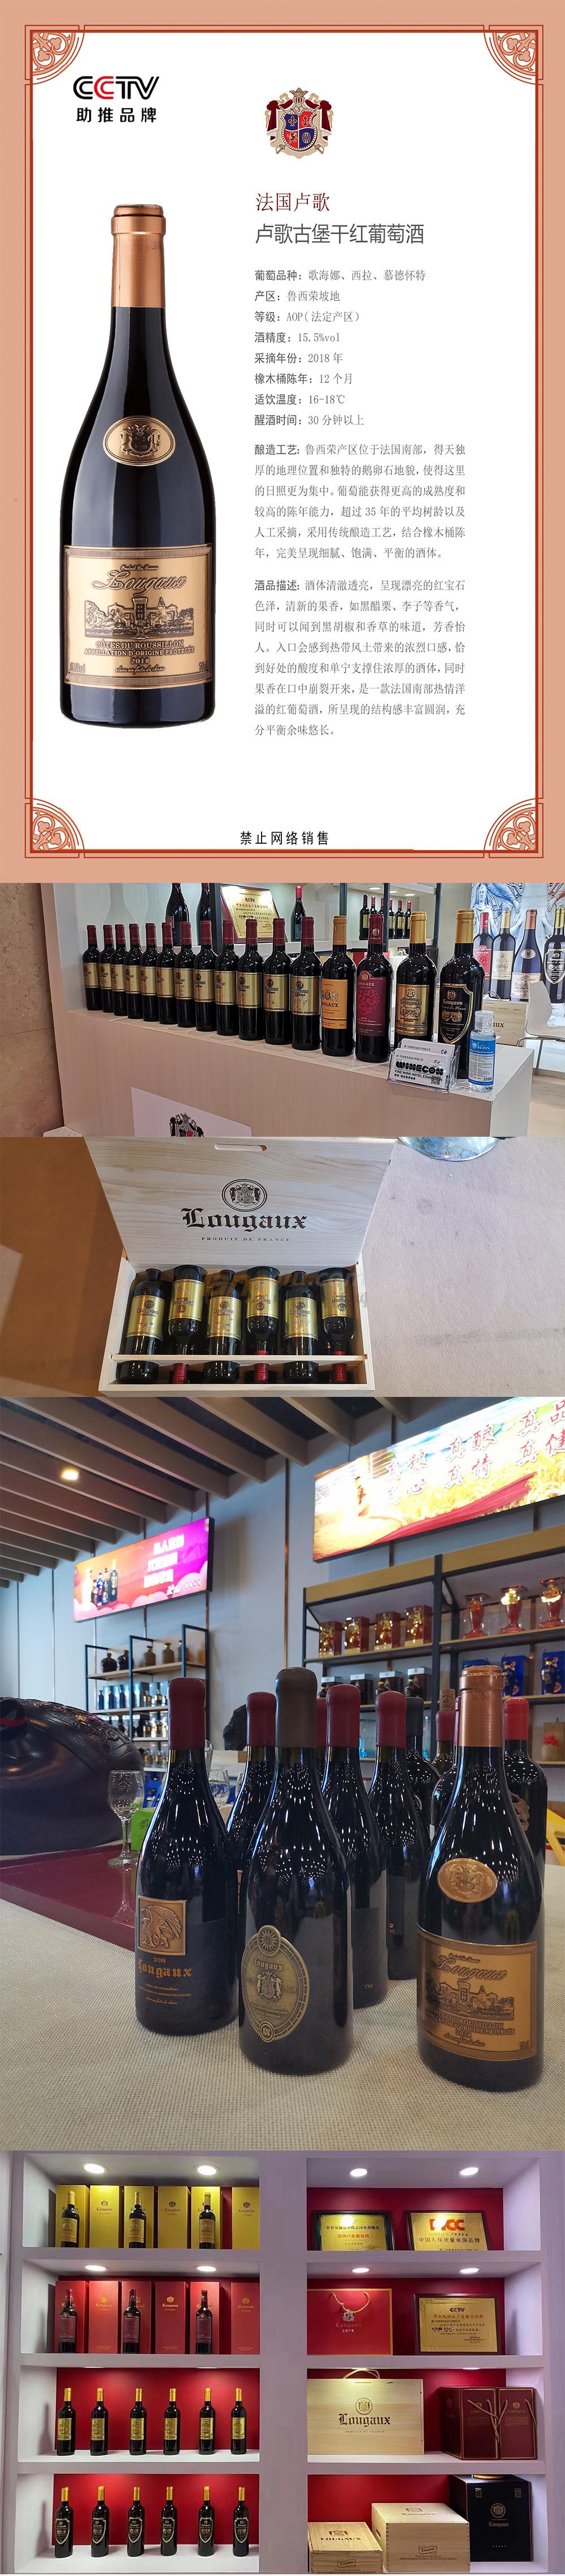 法国卢歌卢歌古堡干红葡萄酒产品介绍.jpg